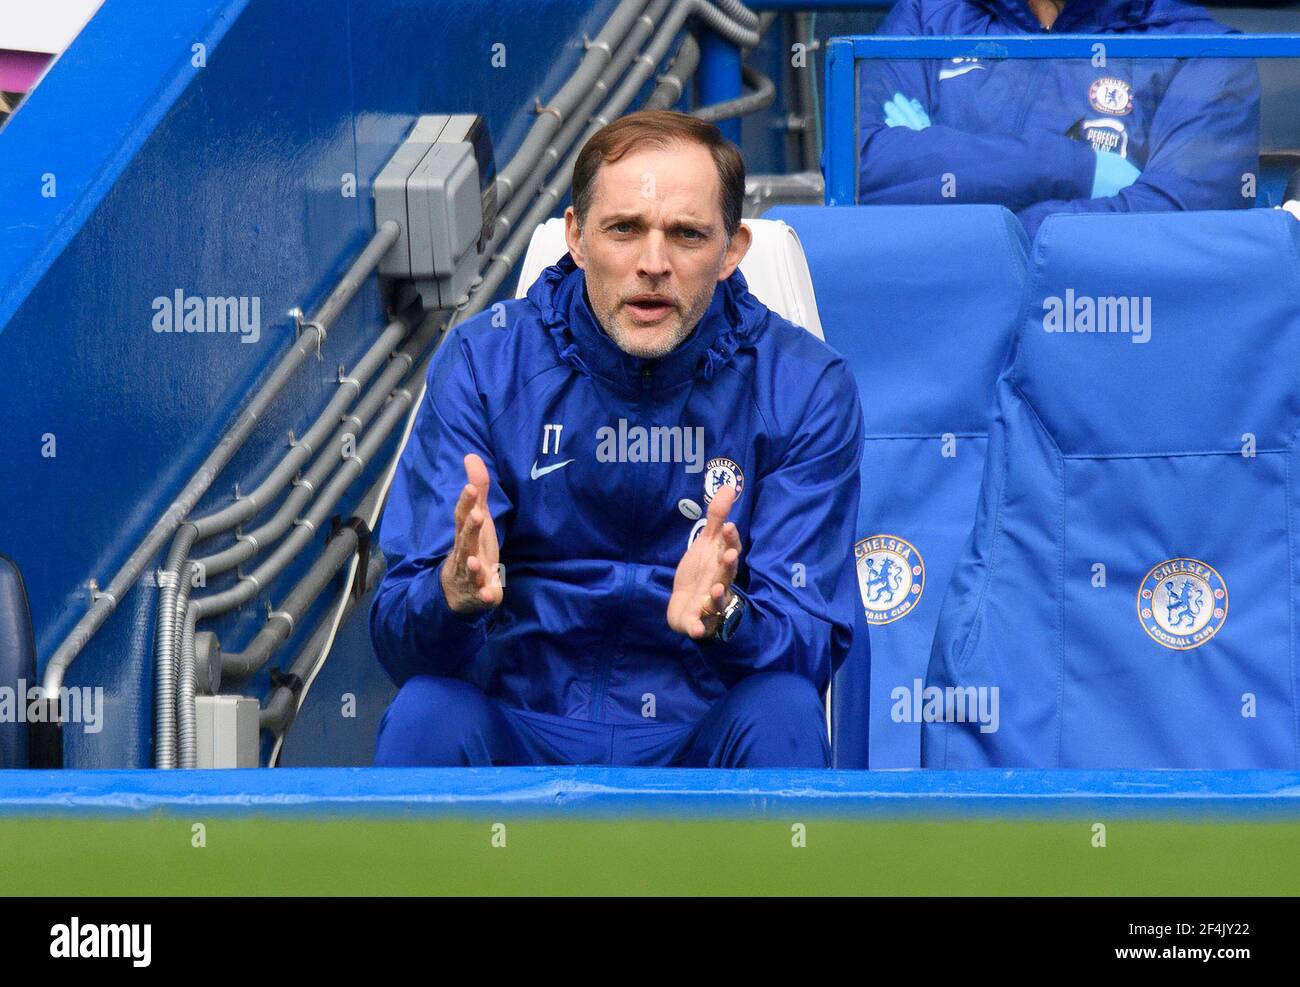 Stamford Bridge, London, 21. März 2021 Chelsea's Head Coach Thomas Tuchel während ihres FA Cup-Spiels gegen Sheffield United Bildnachweis : © Mark Pain / Alamy Live News Stockfoto